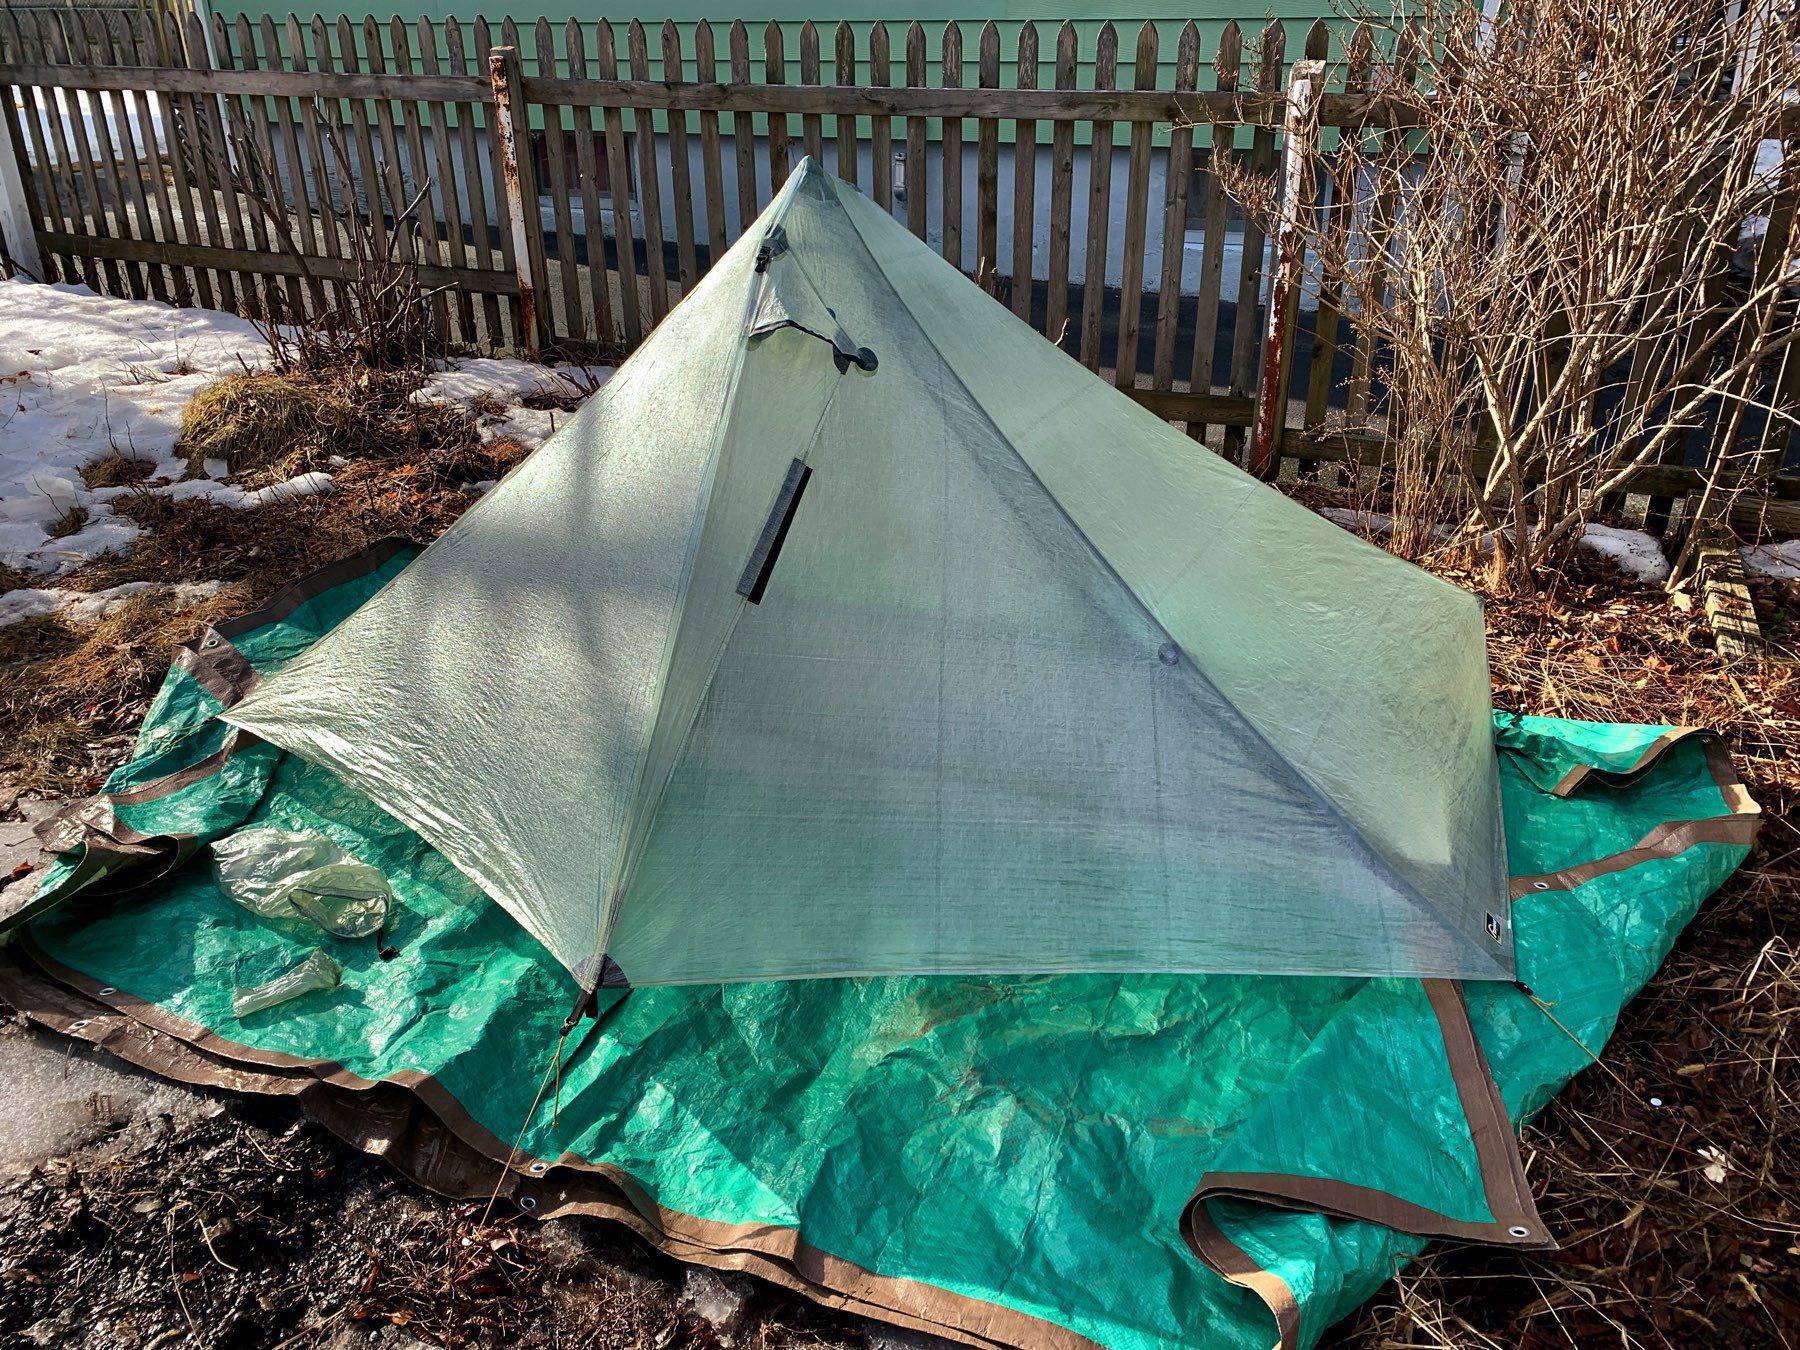 A tent in a backyard